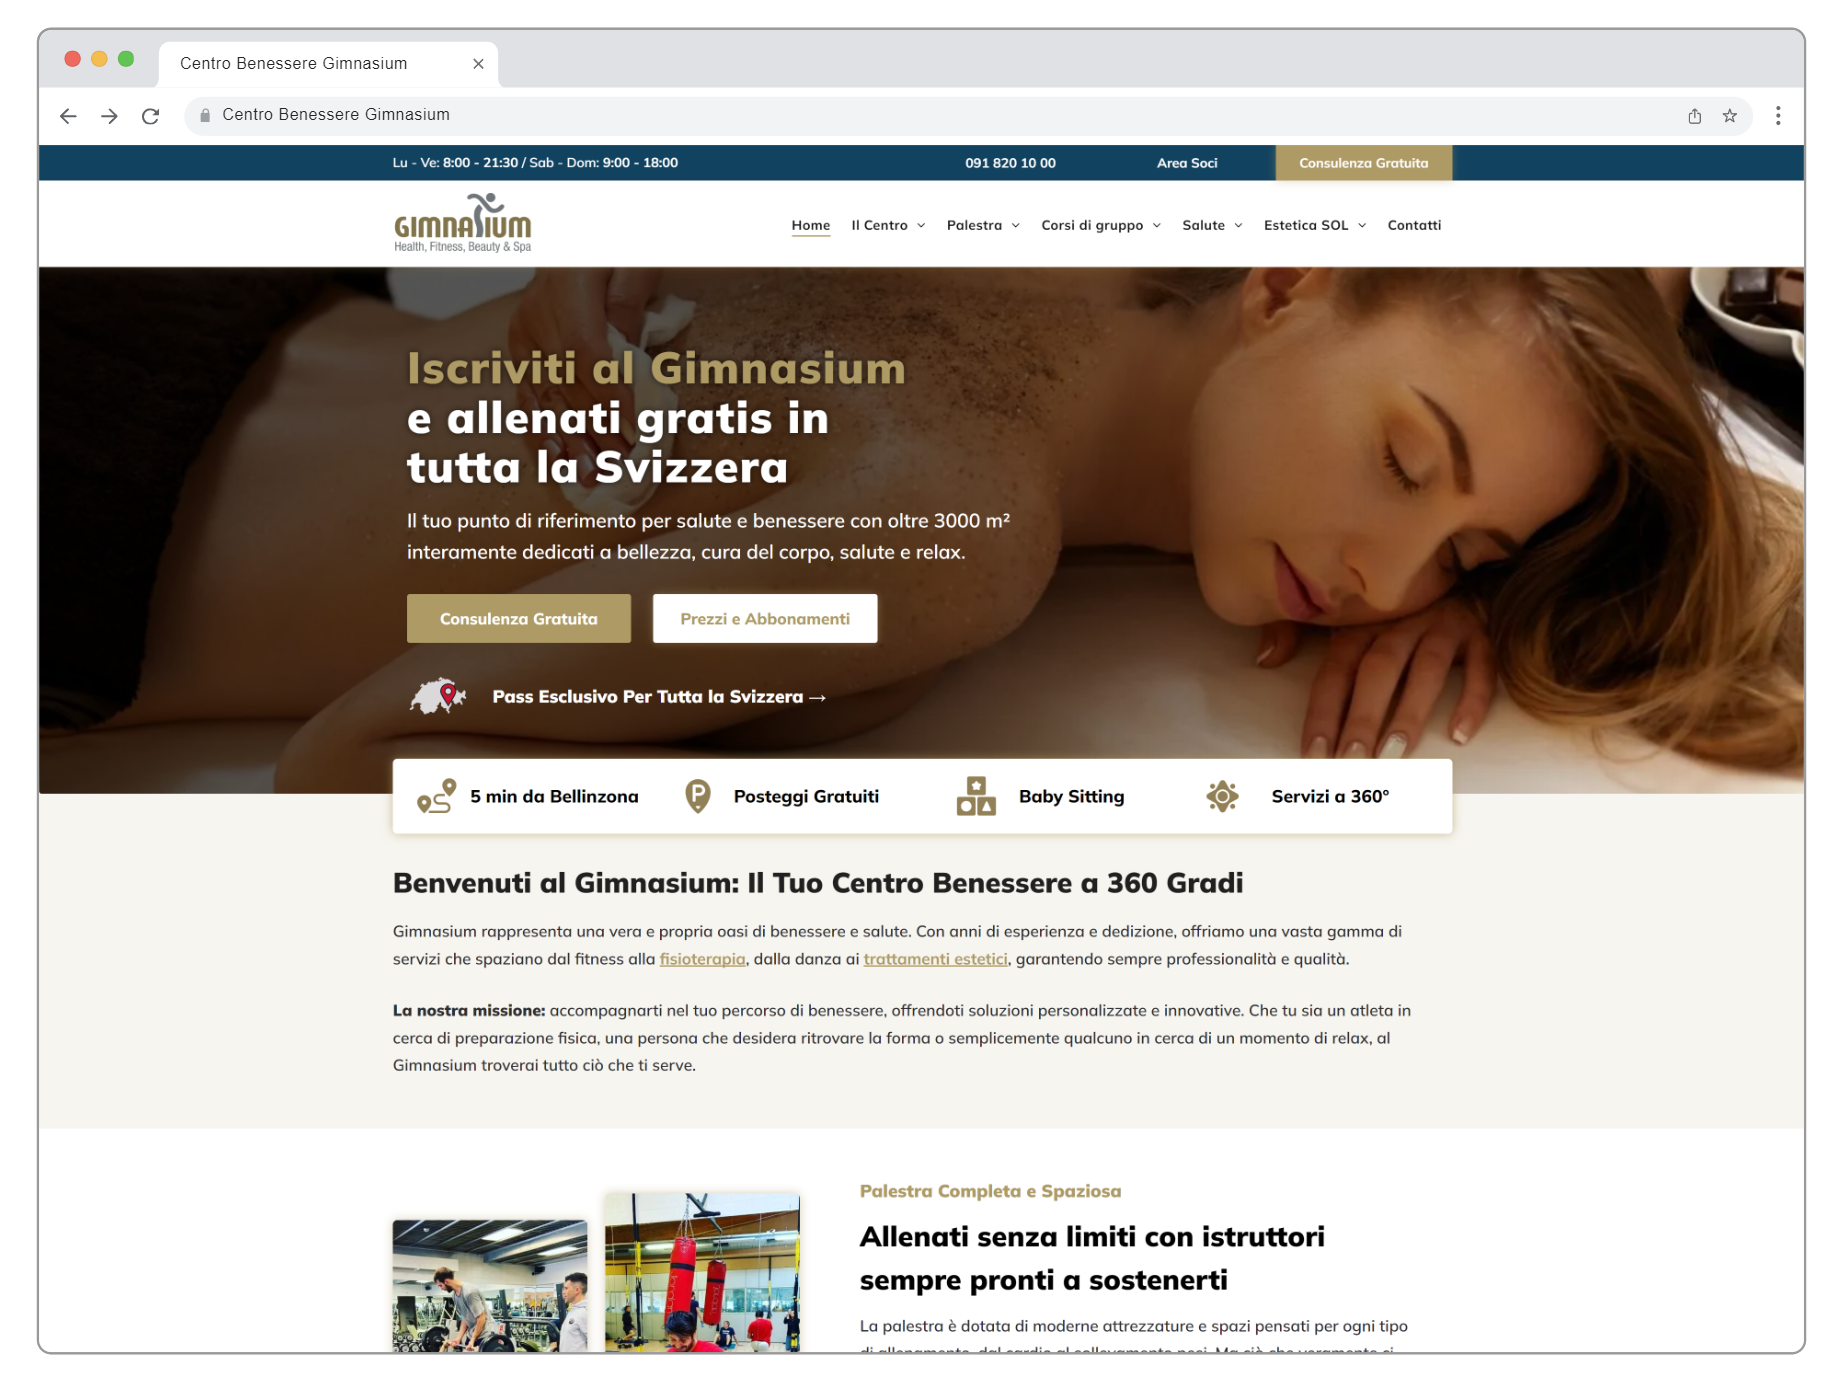 Una donna è sdraiata su un letto con gli occhi chiusi e guarda un sito web.